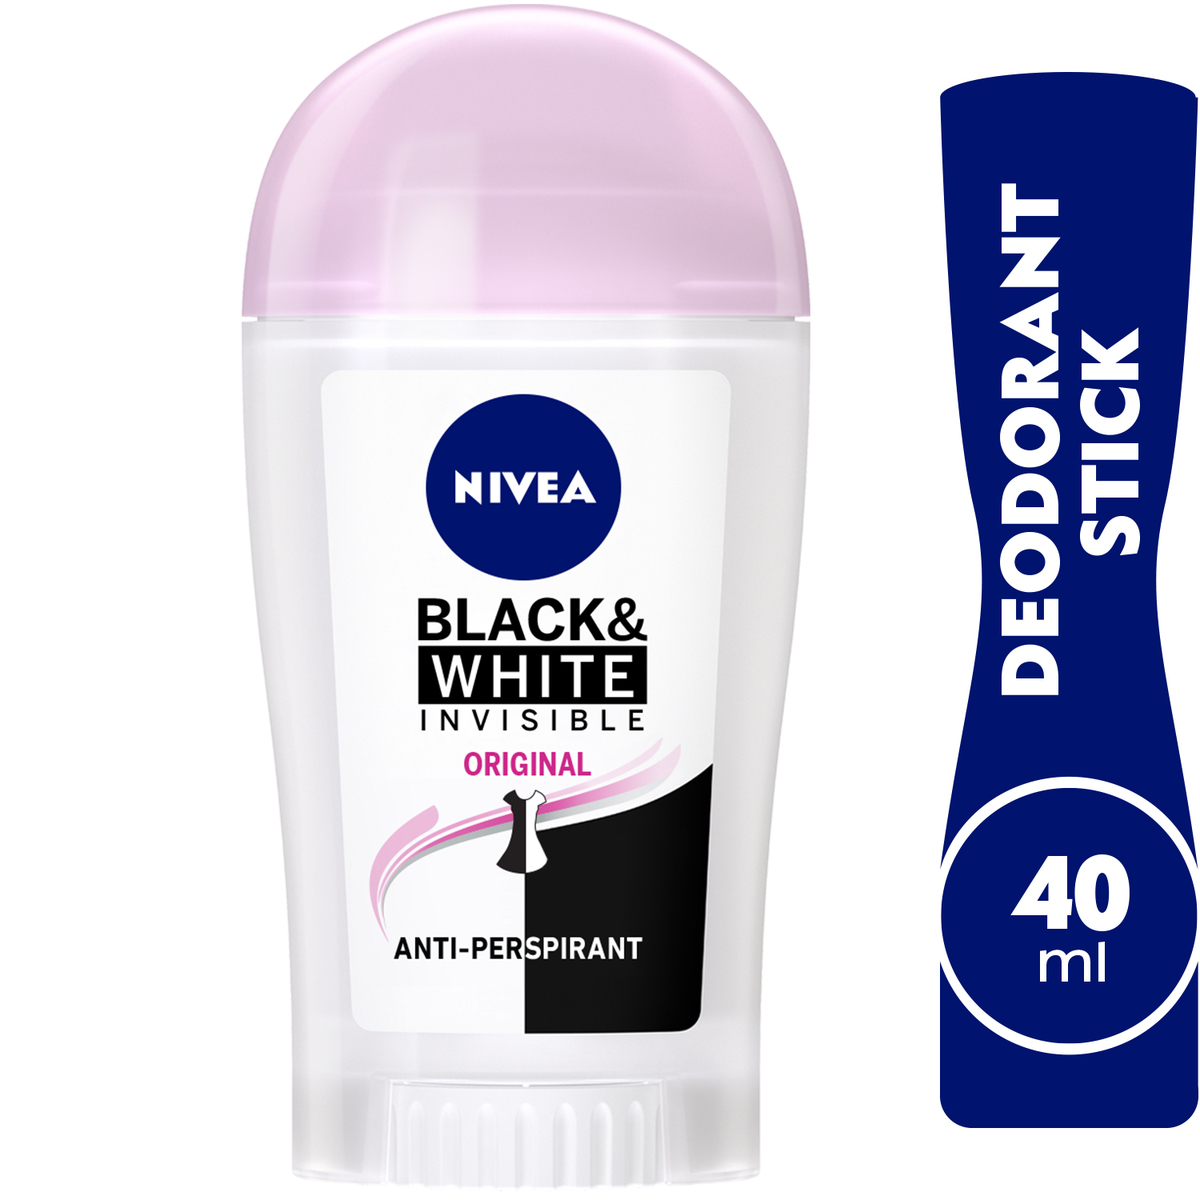 Nivea Deodorant Stick Invisible Black & White Invisible 40 ml